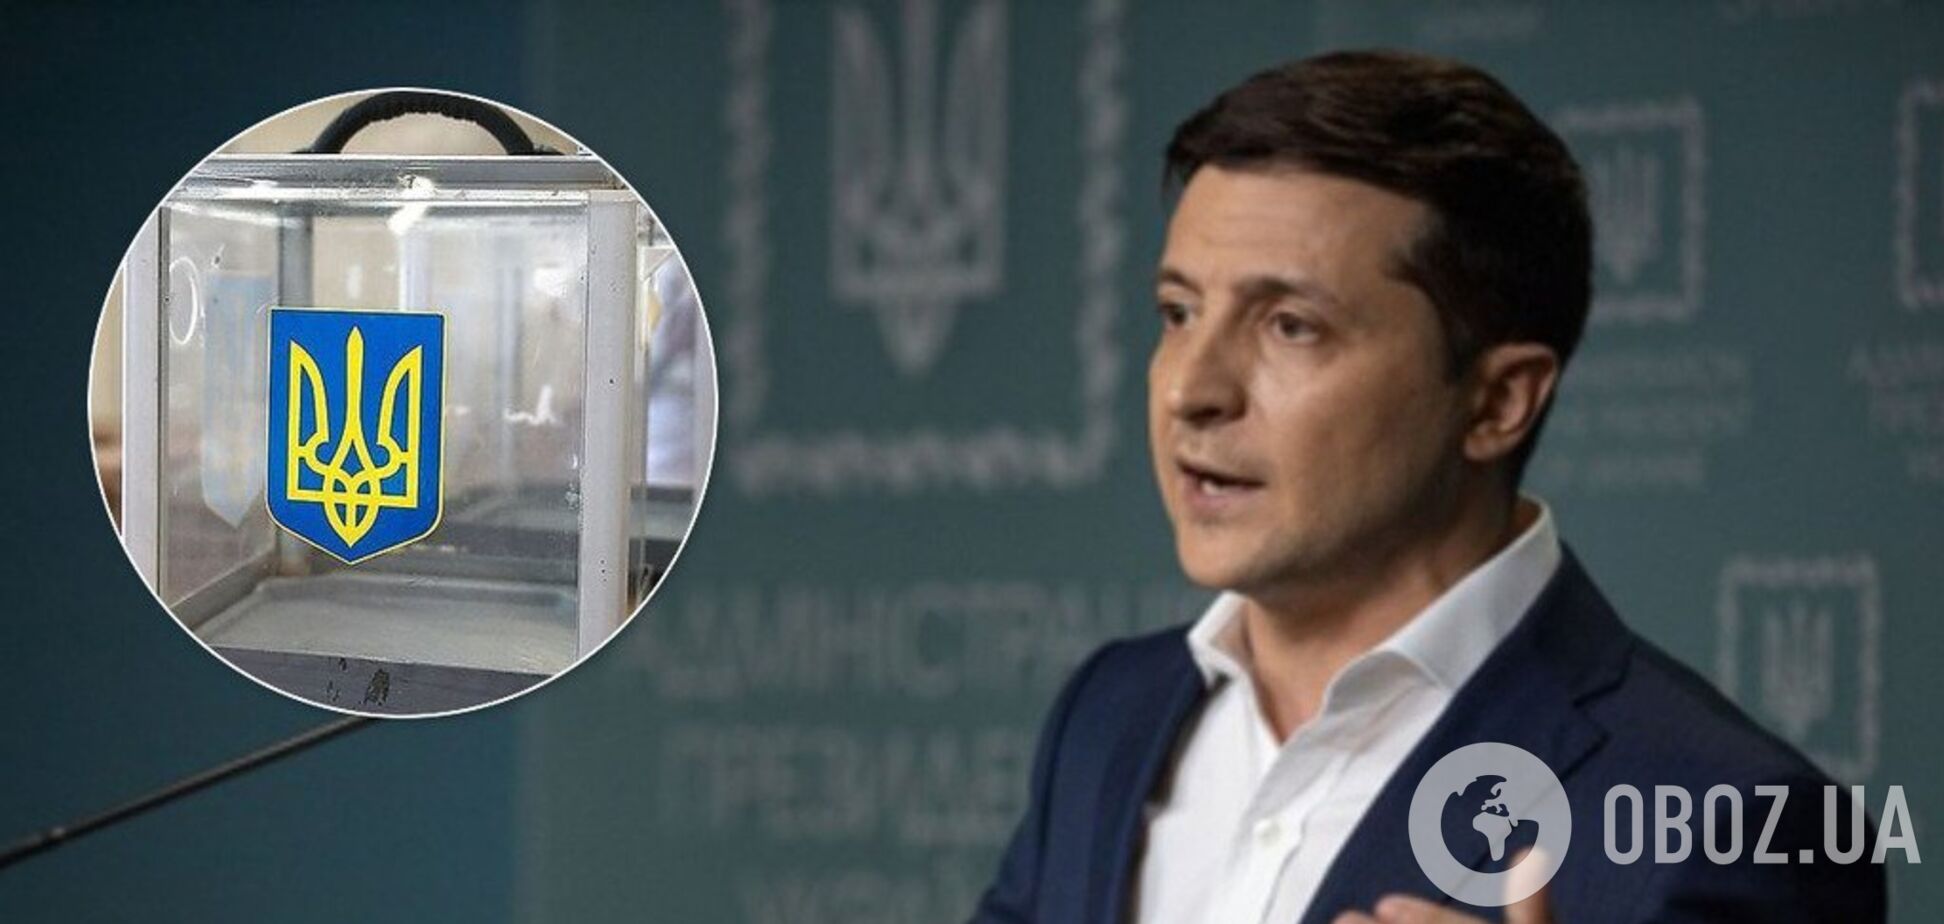 Вибори на Донбасі: Зеленський на брифінгу назвав умову